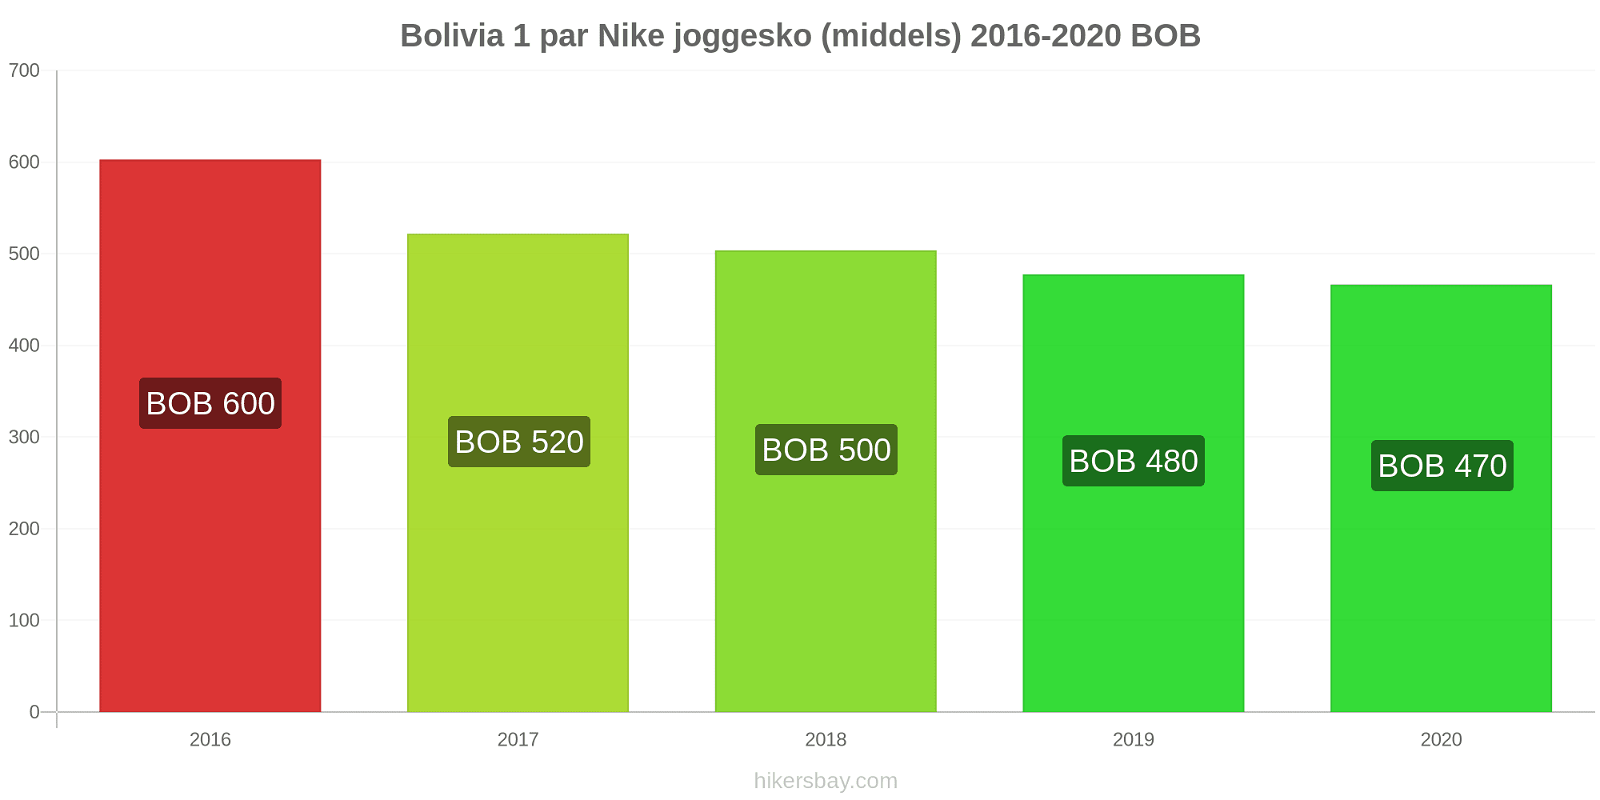 Bolivia prisendringer 1 par Nike joggesko (middels) hikersbay.com